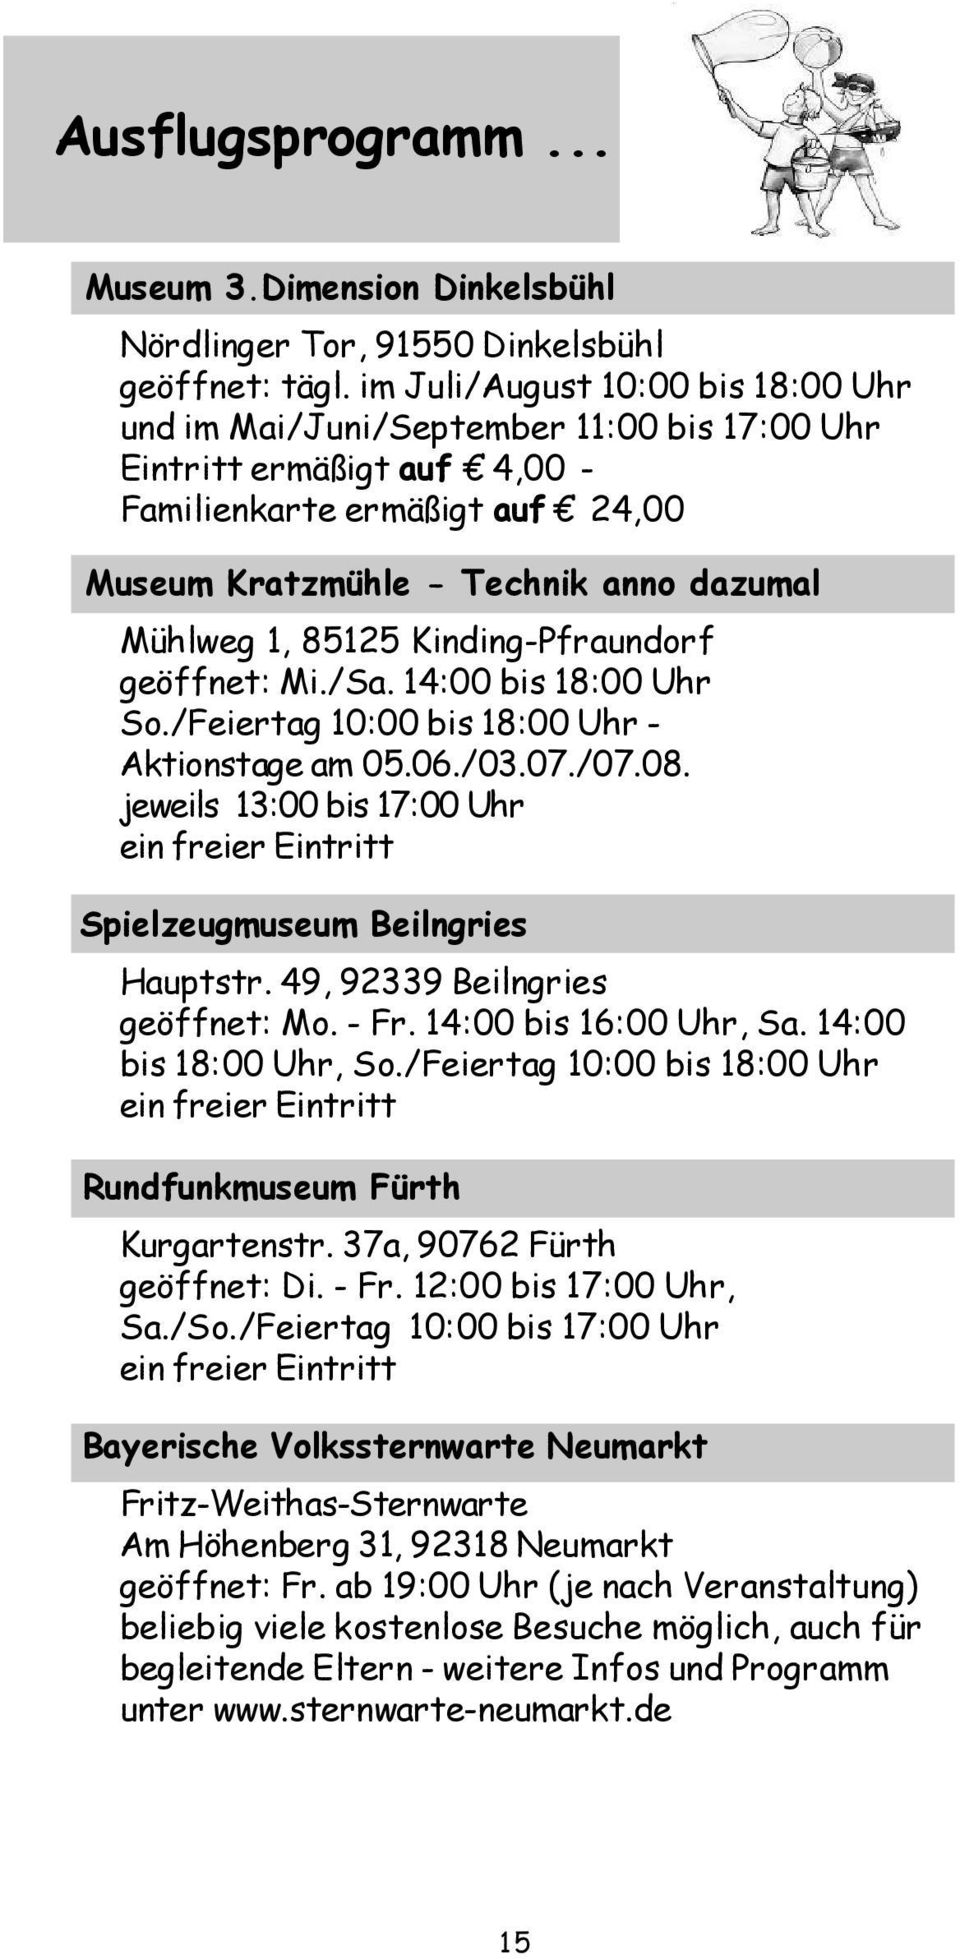 85125 Kinding-Pfraundorf geöffnet: Mi./Sa. 14:00 bis 18:00 Uhr So./Feiertag 10:00 bis 18:00 Uhr - Aktionstage am 05.06./03.07./07.08.